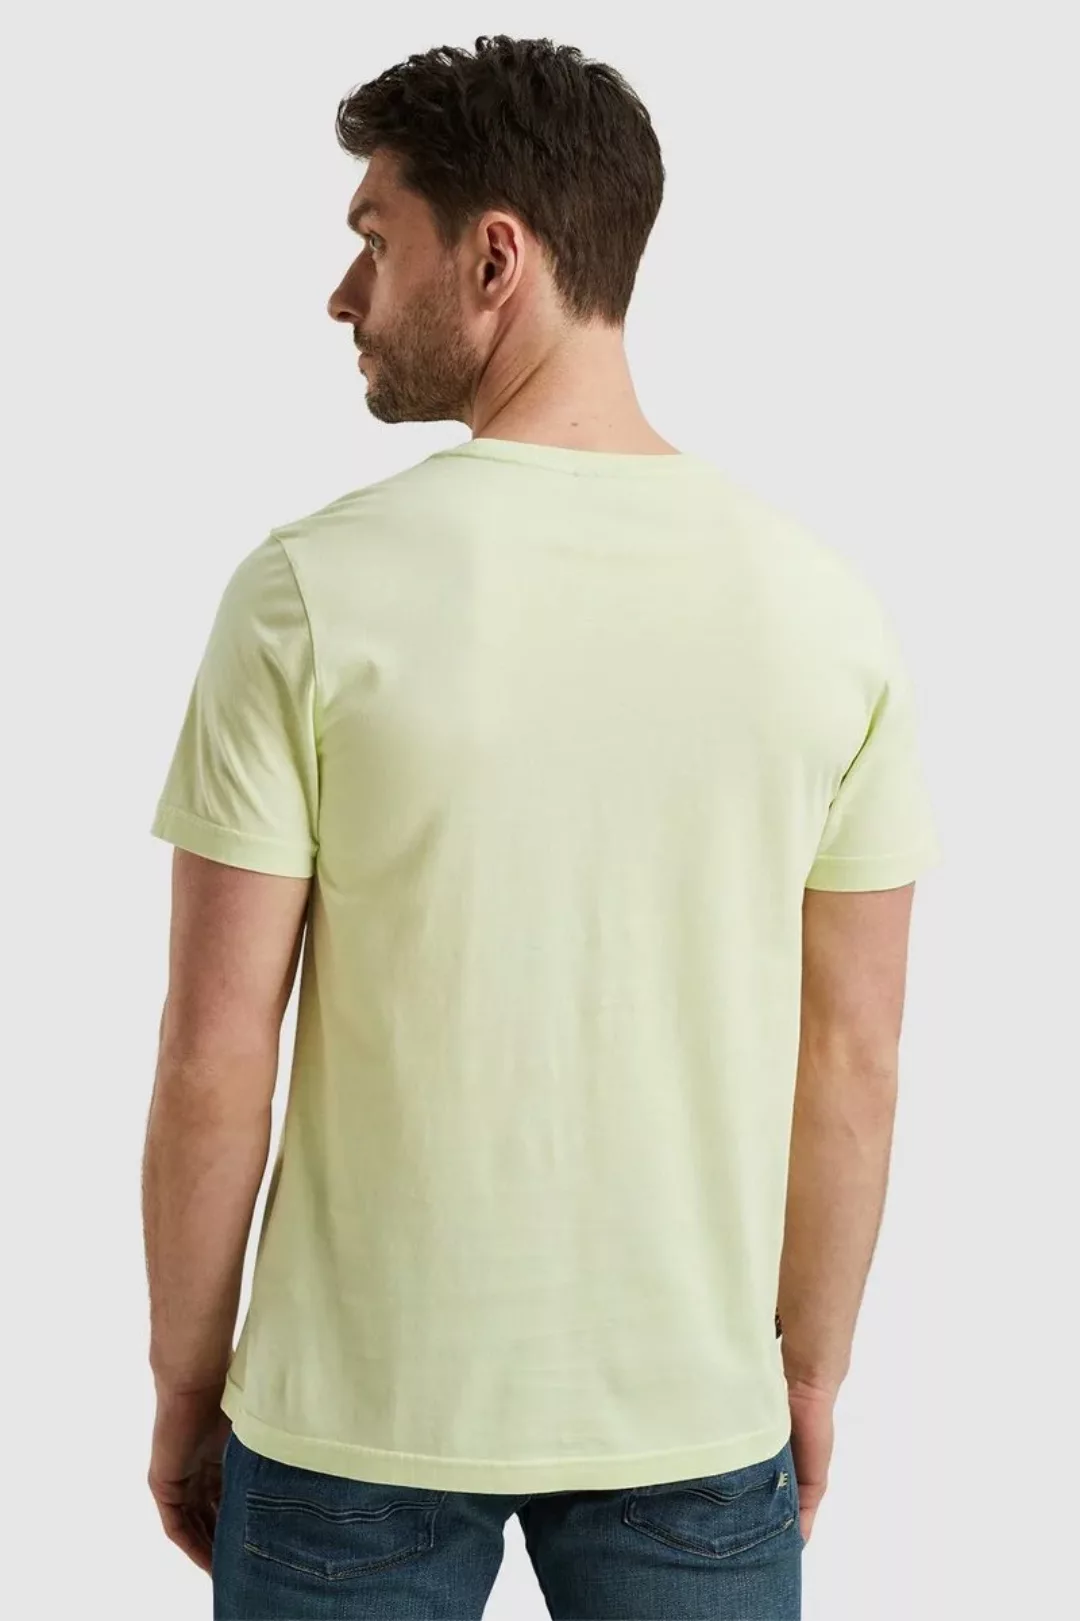 PME LEGEND T-Shirt - kurzarm Shirt mit Print - sommerliches T-Shirt günstig online kaufen